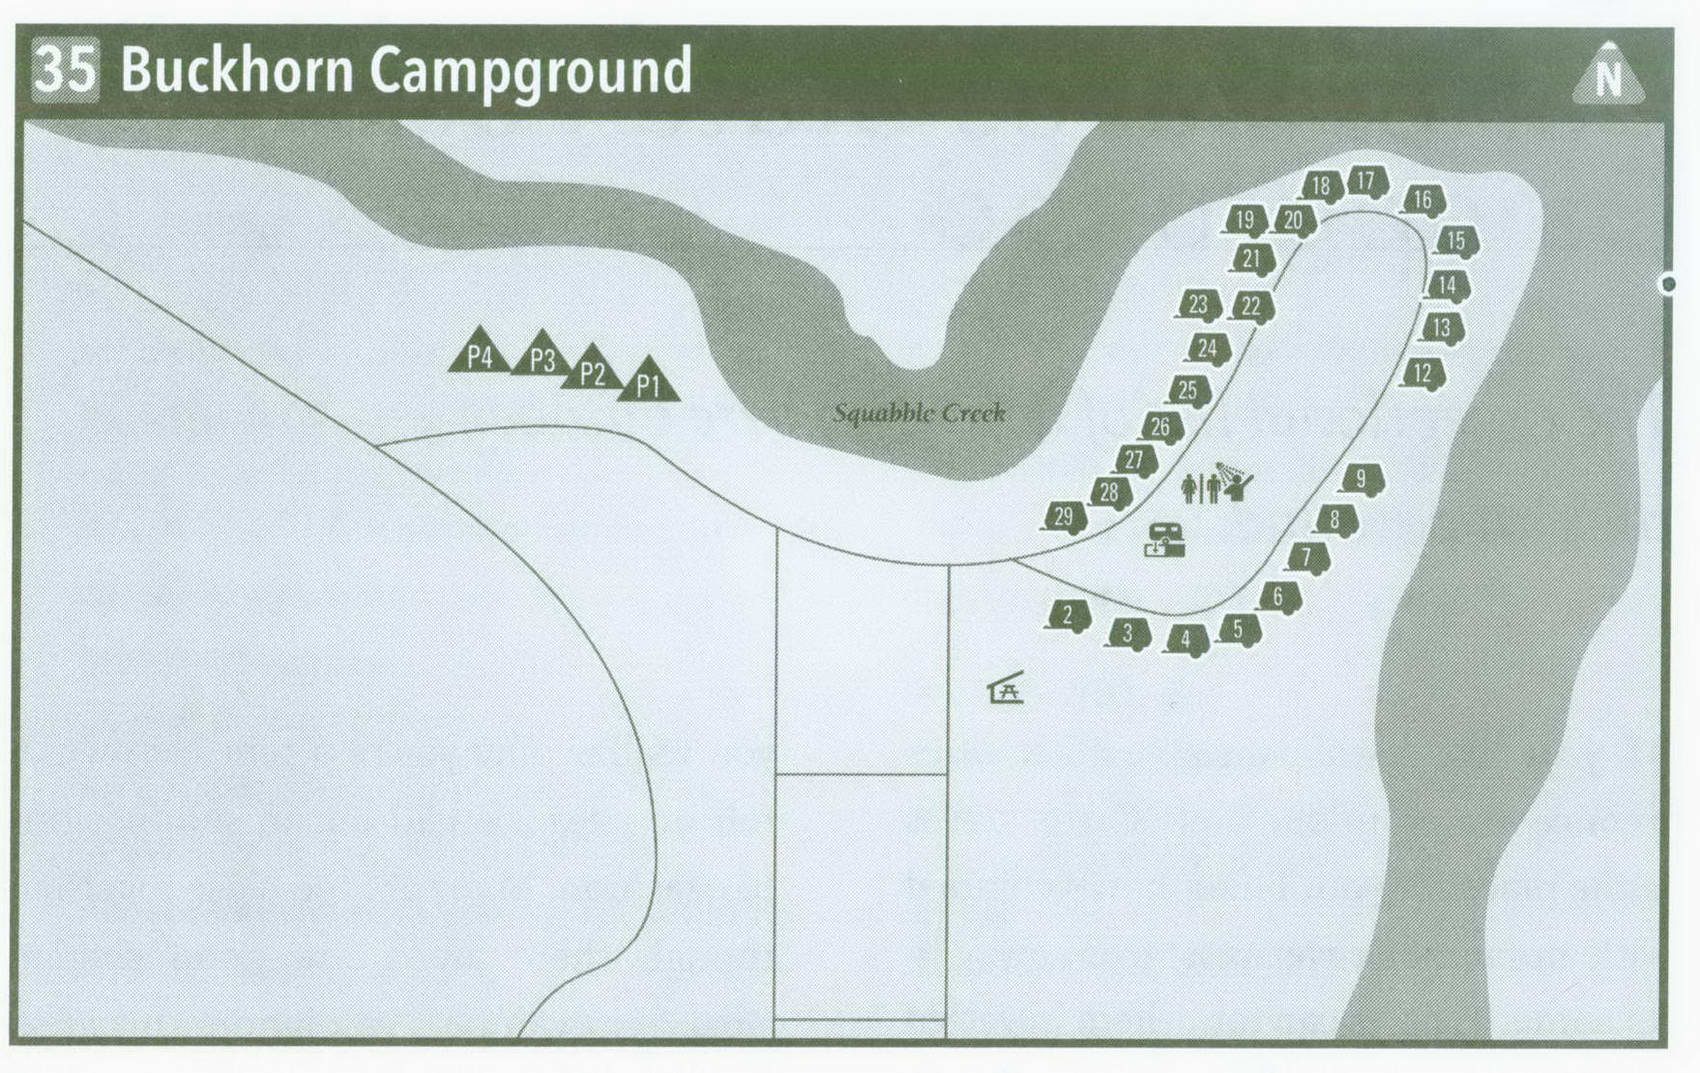 Plan of Buckhorn Campground